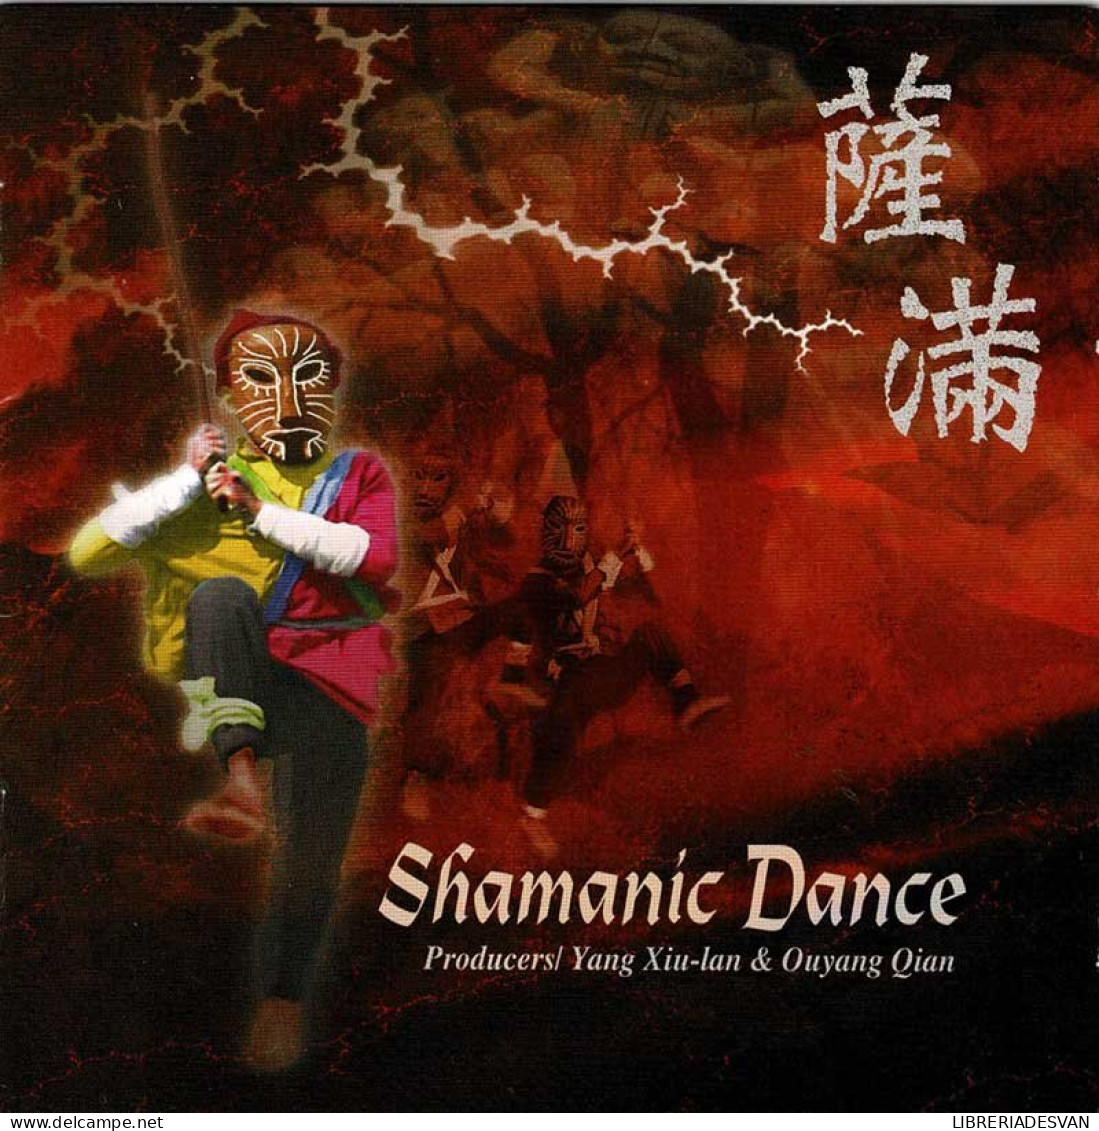 Yang Xiu-lan & Ouyang Qian - Shamanic Dance. CD - Nueva Era (New Age)